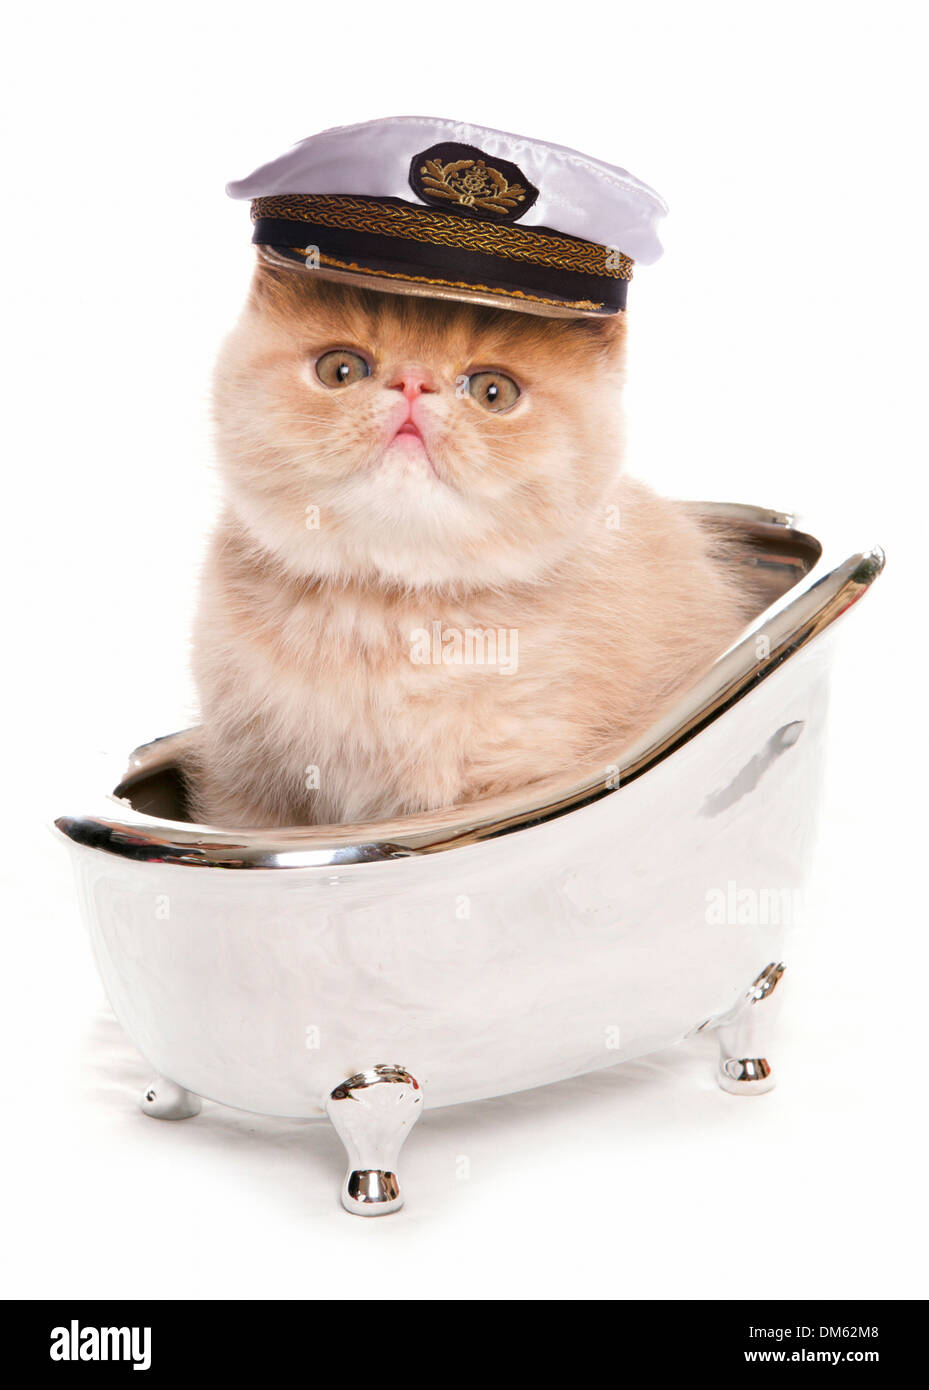 Exotische Kurzhaarkatze. Kätzchen mit Kapitäne Hut in eine silberne Badewanne. Studio Bild vor einem weißen Hintergrund Stockfoto